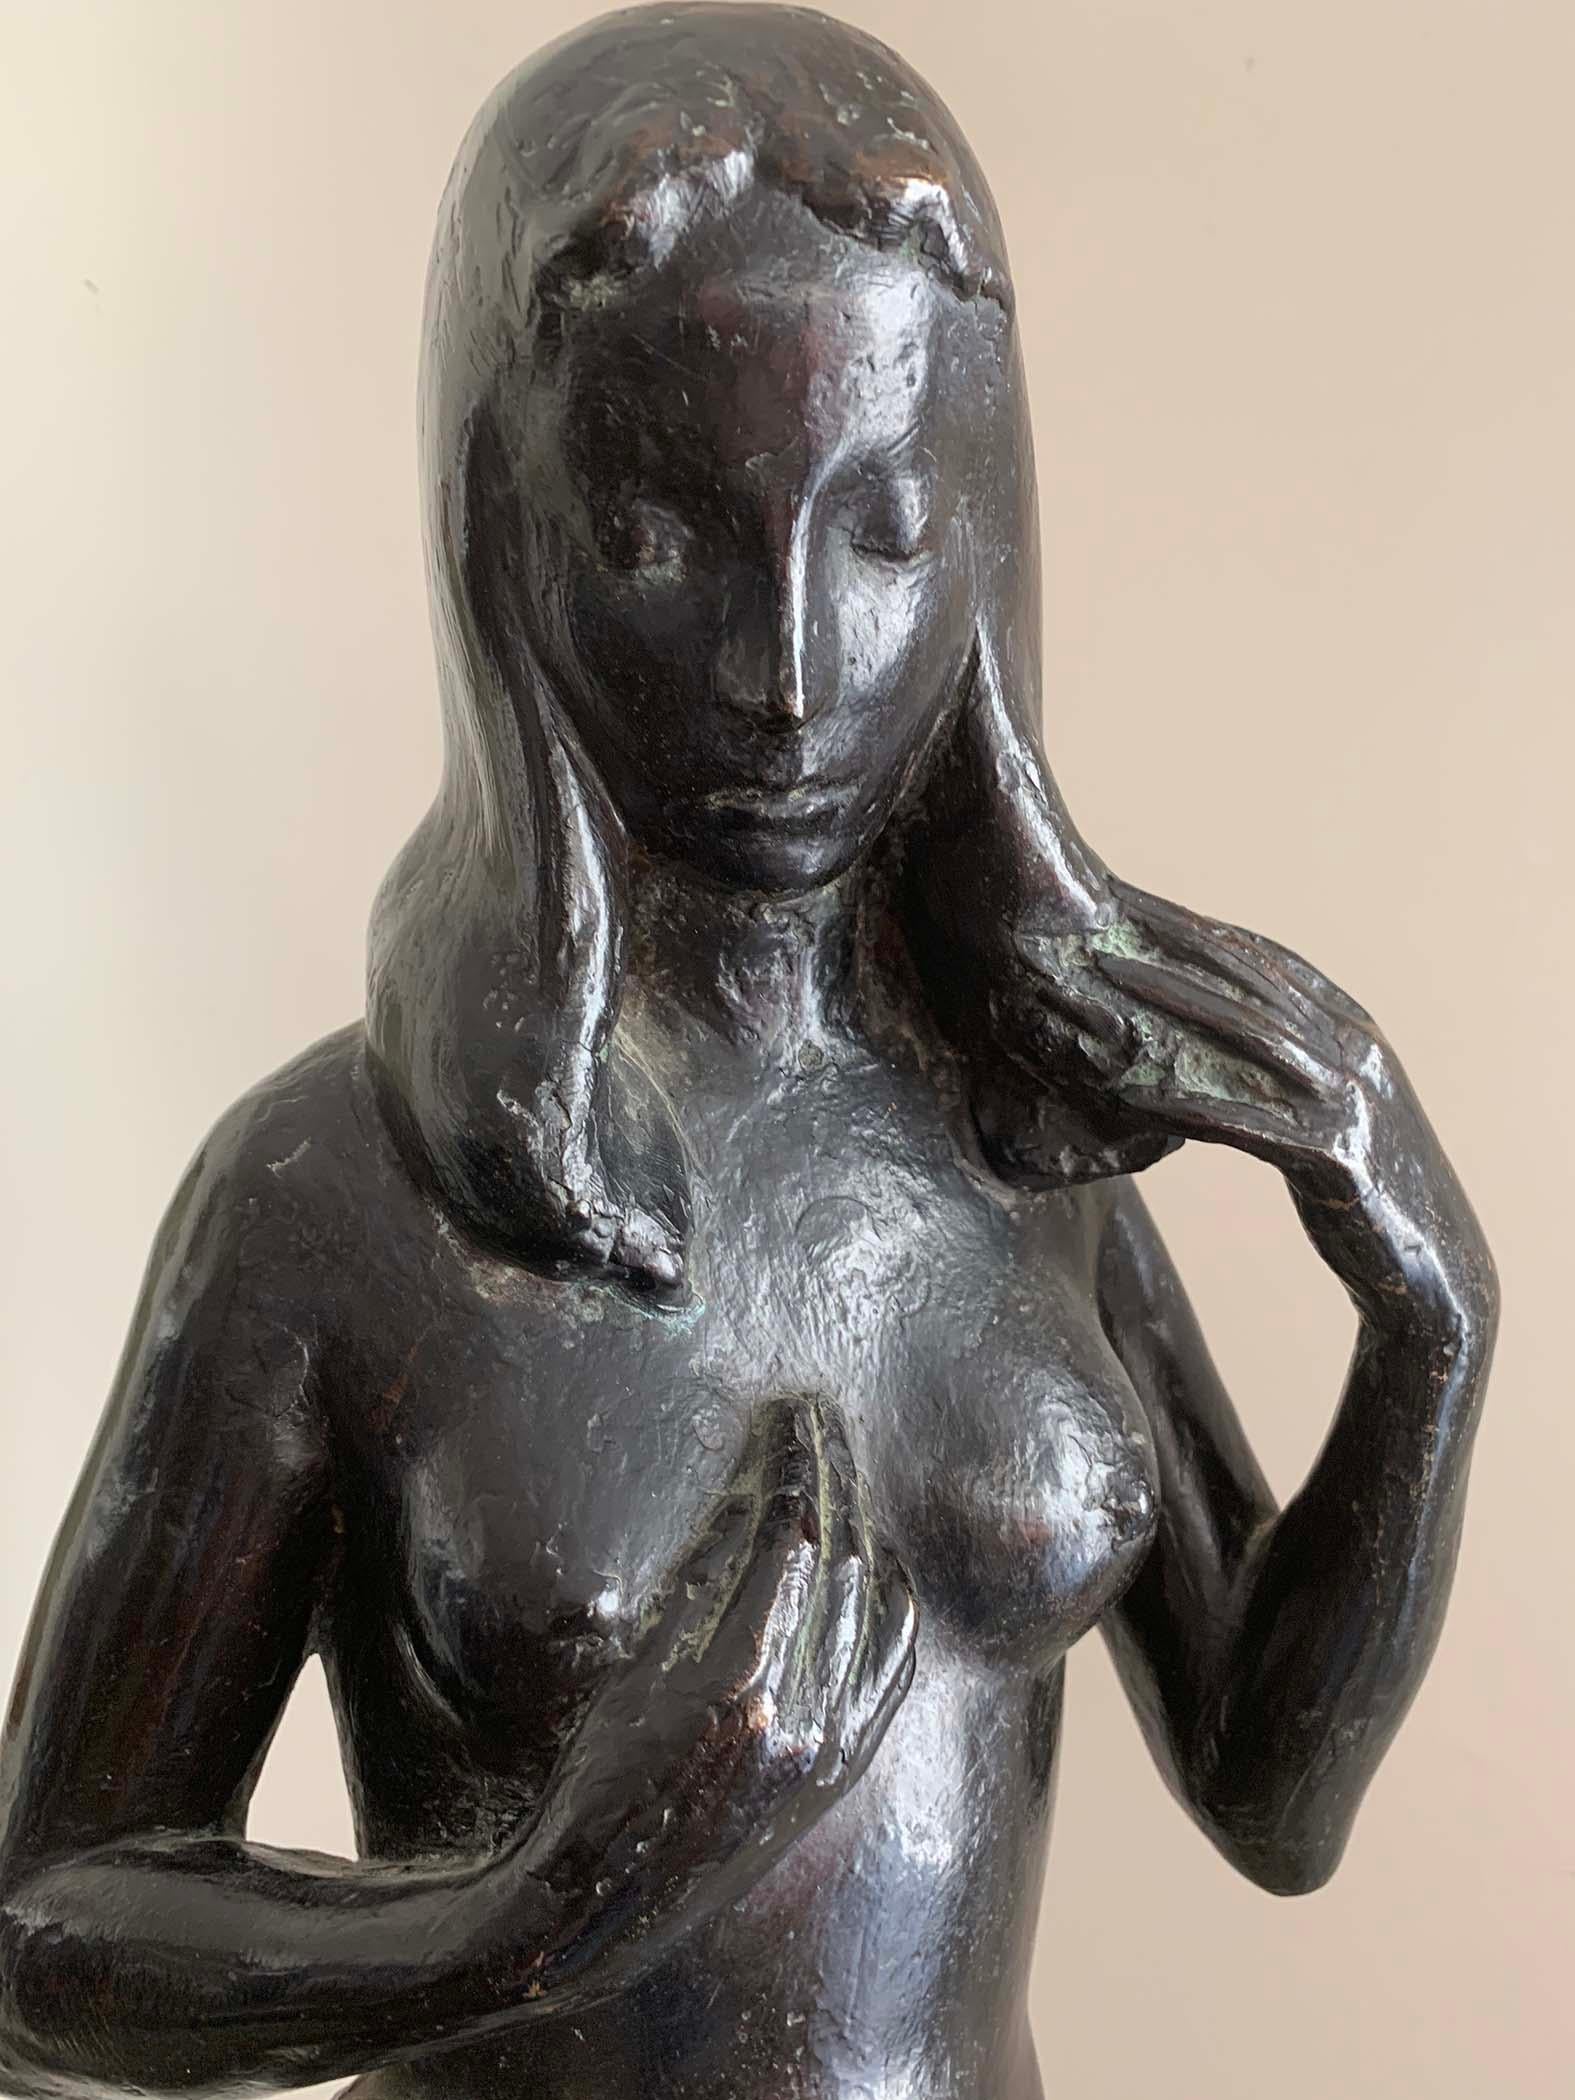 Venus - Sculpture by Guy Charles Revol